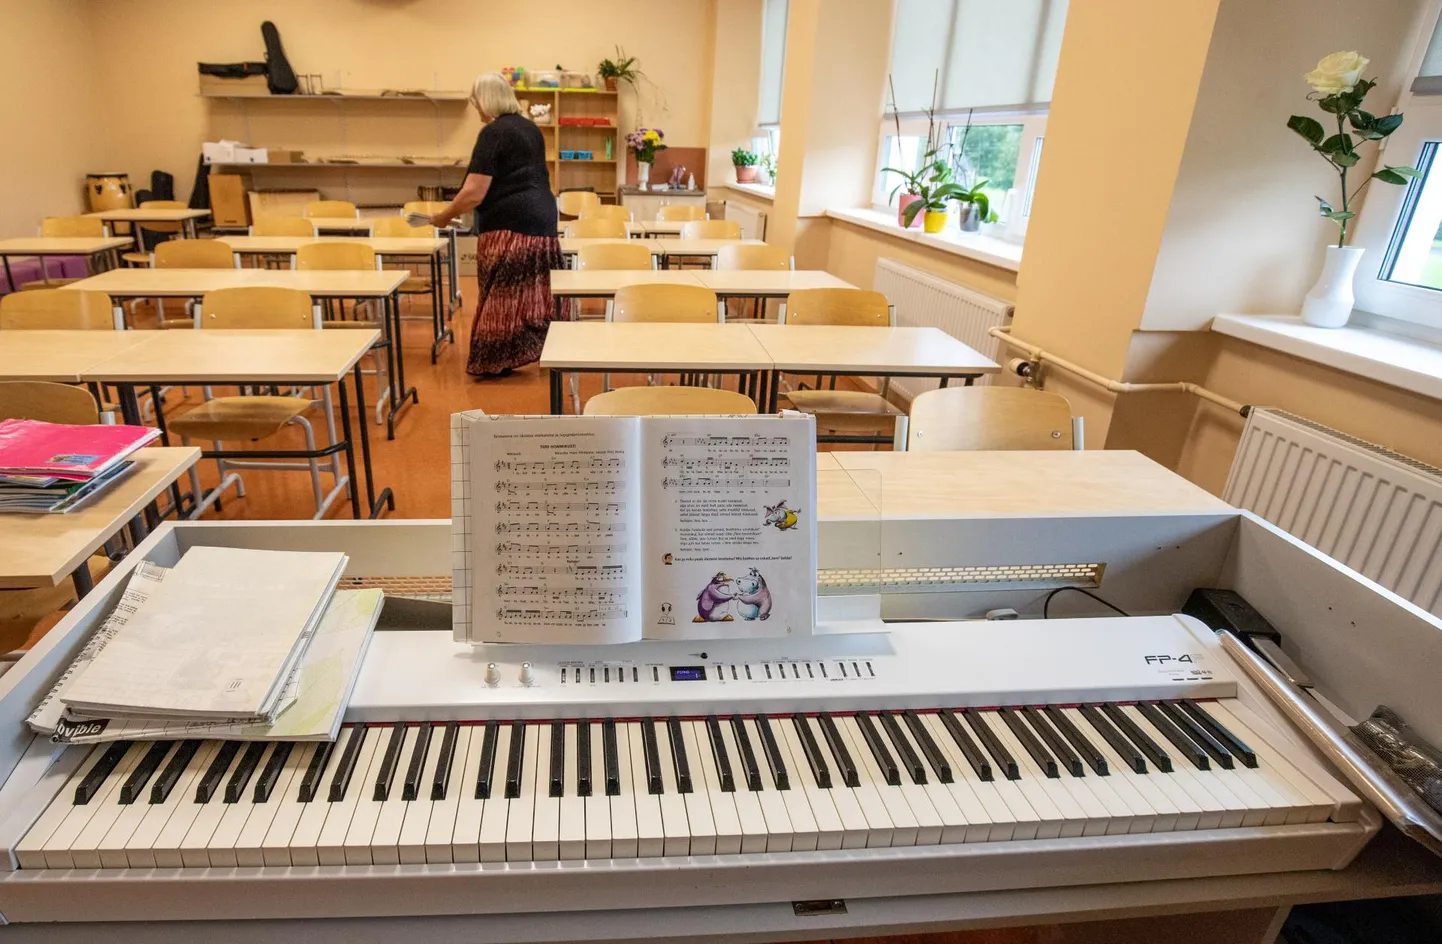 Põhja-Pärnumaa valla tänavune prioriteet oli Pärnu-Jaagupi muusikakooli kolimine Pärnu-Jaagupi põhikooli hoone muusikakooliks kohandatud korpusse.